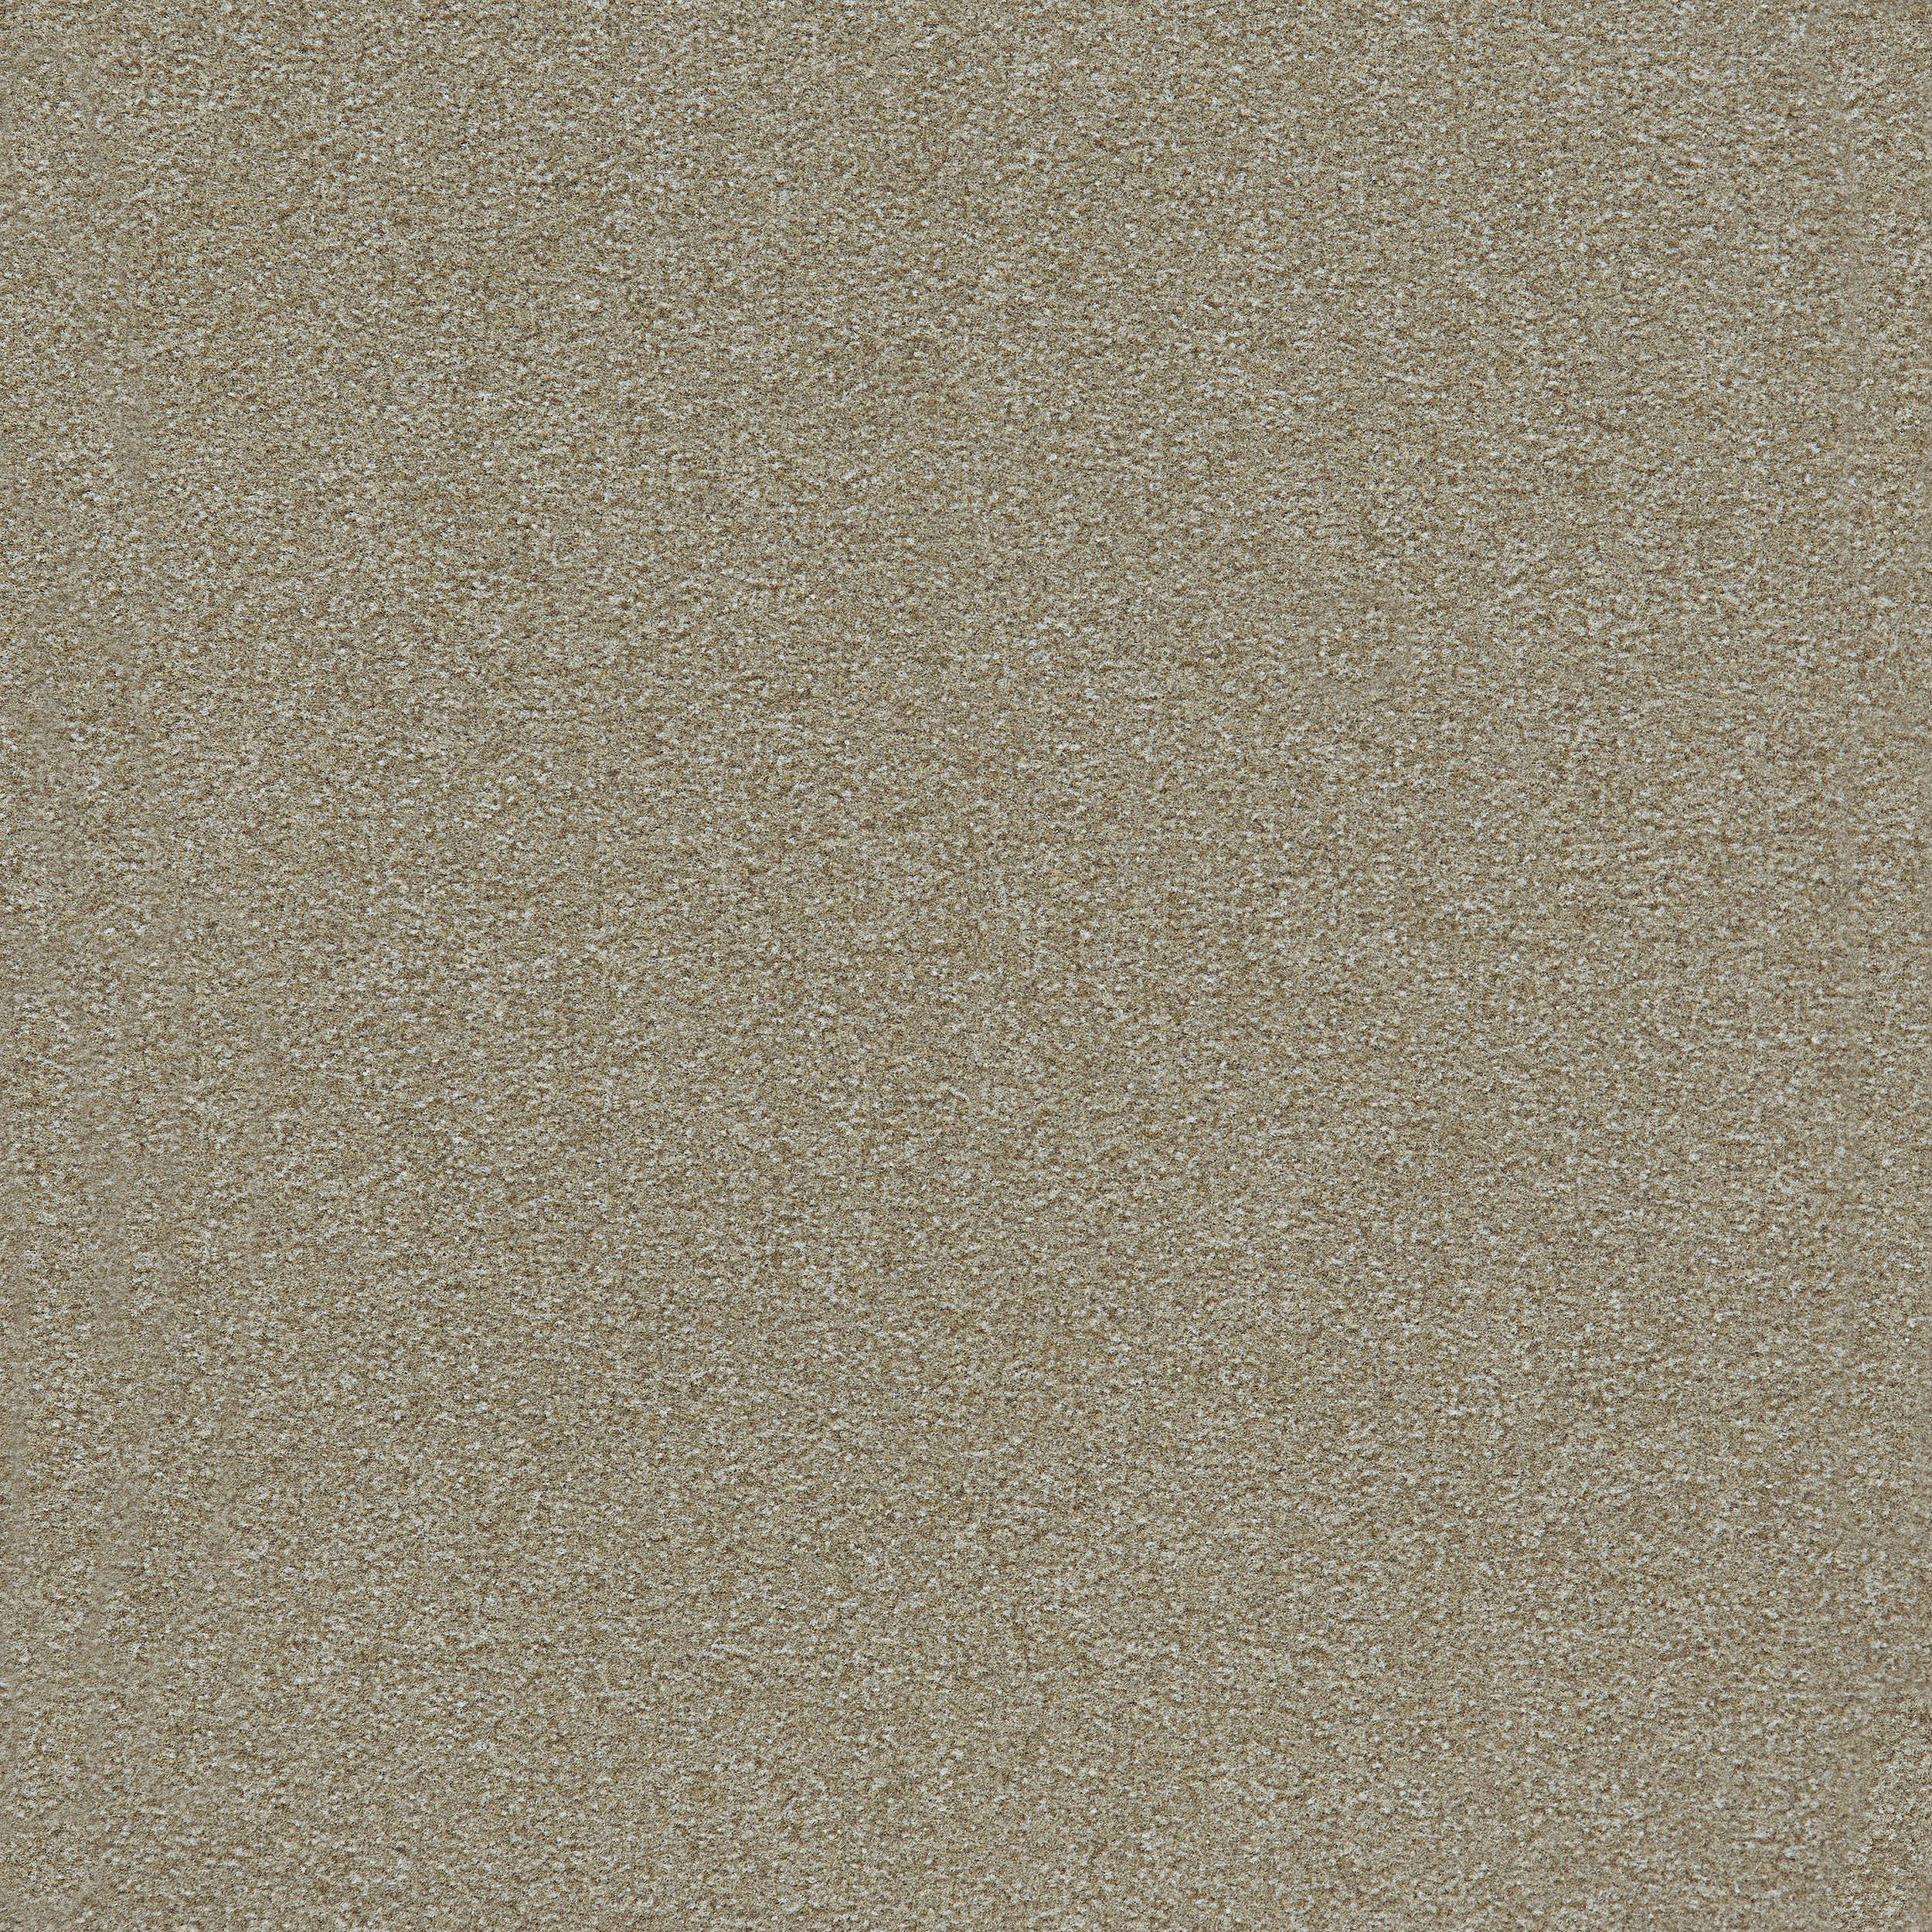 Heuga 725 Carpet Tile In Oyster image number 8